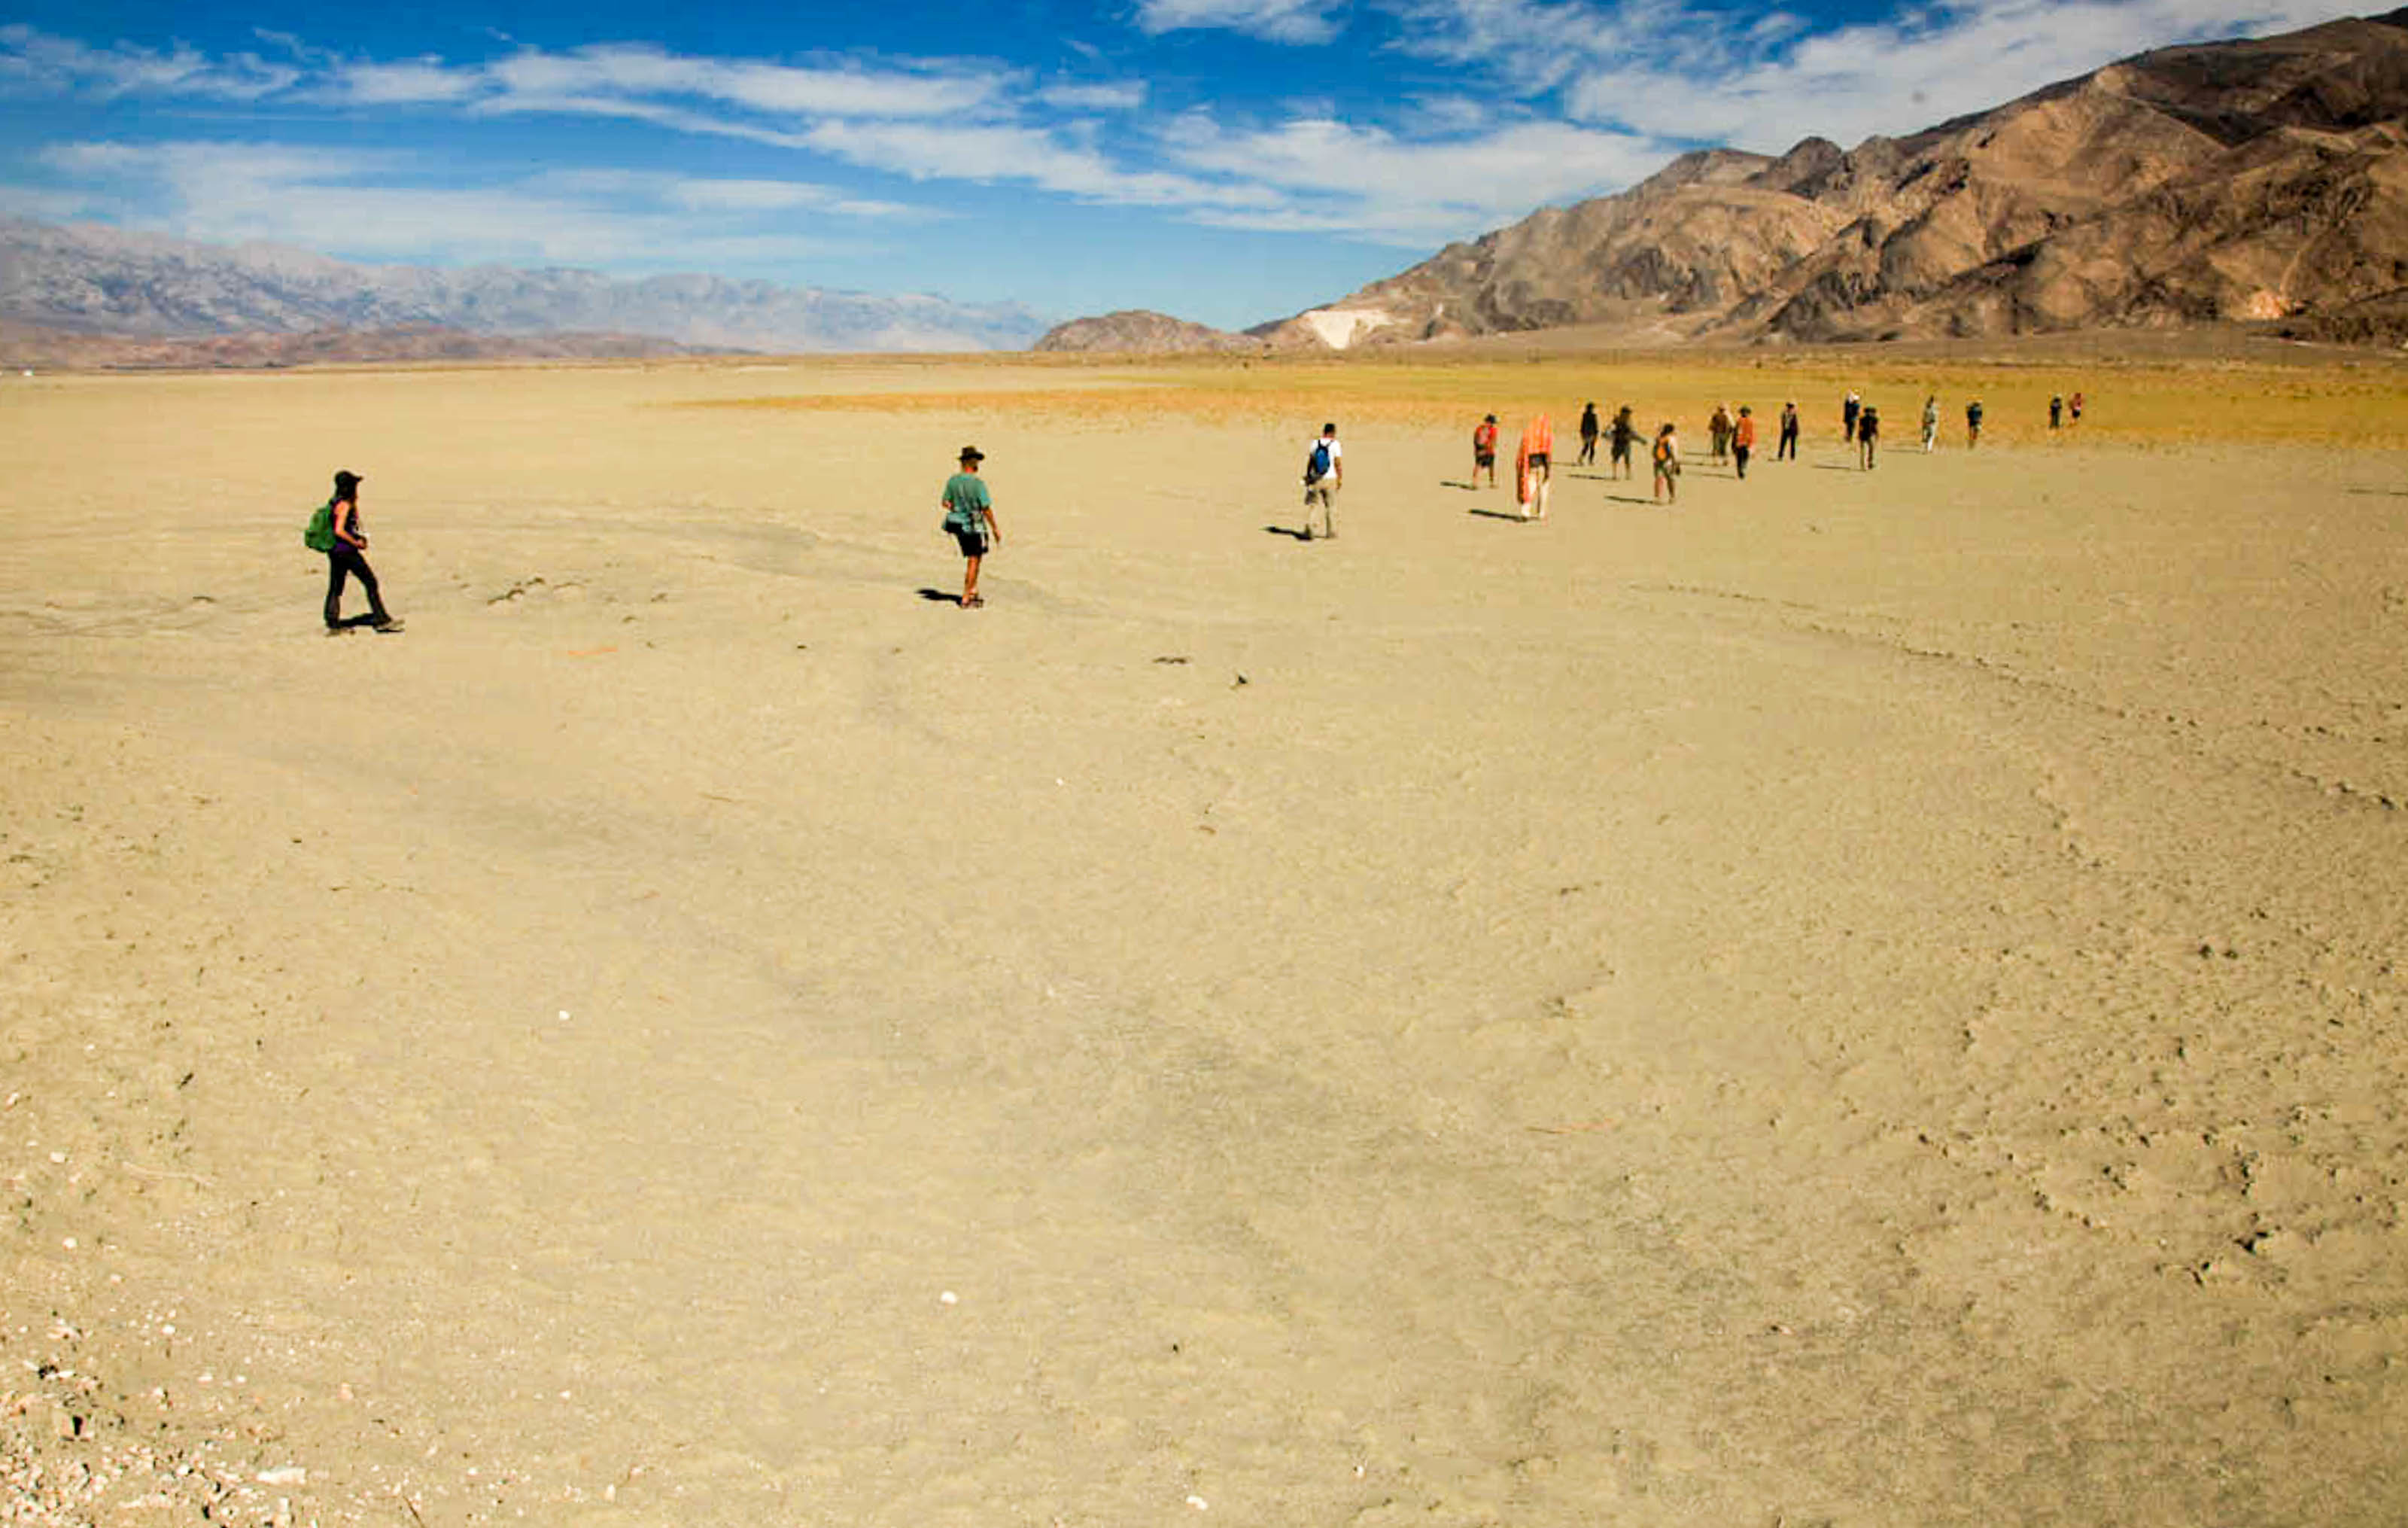 Walking Water pilgrims walking across a dry lake bed